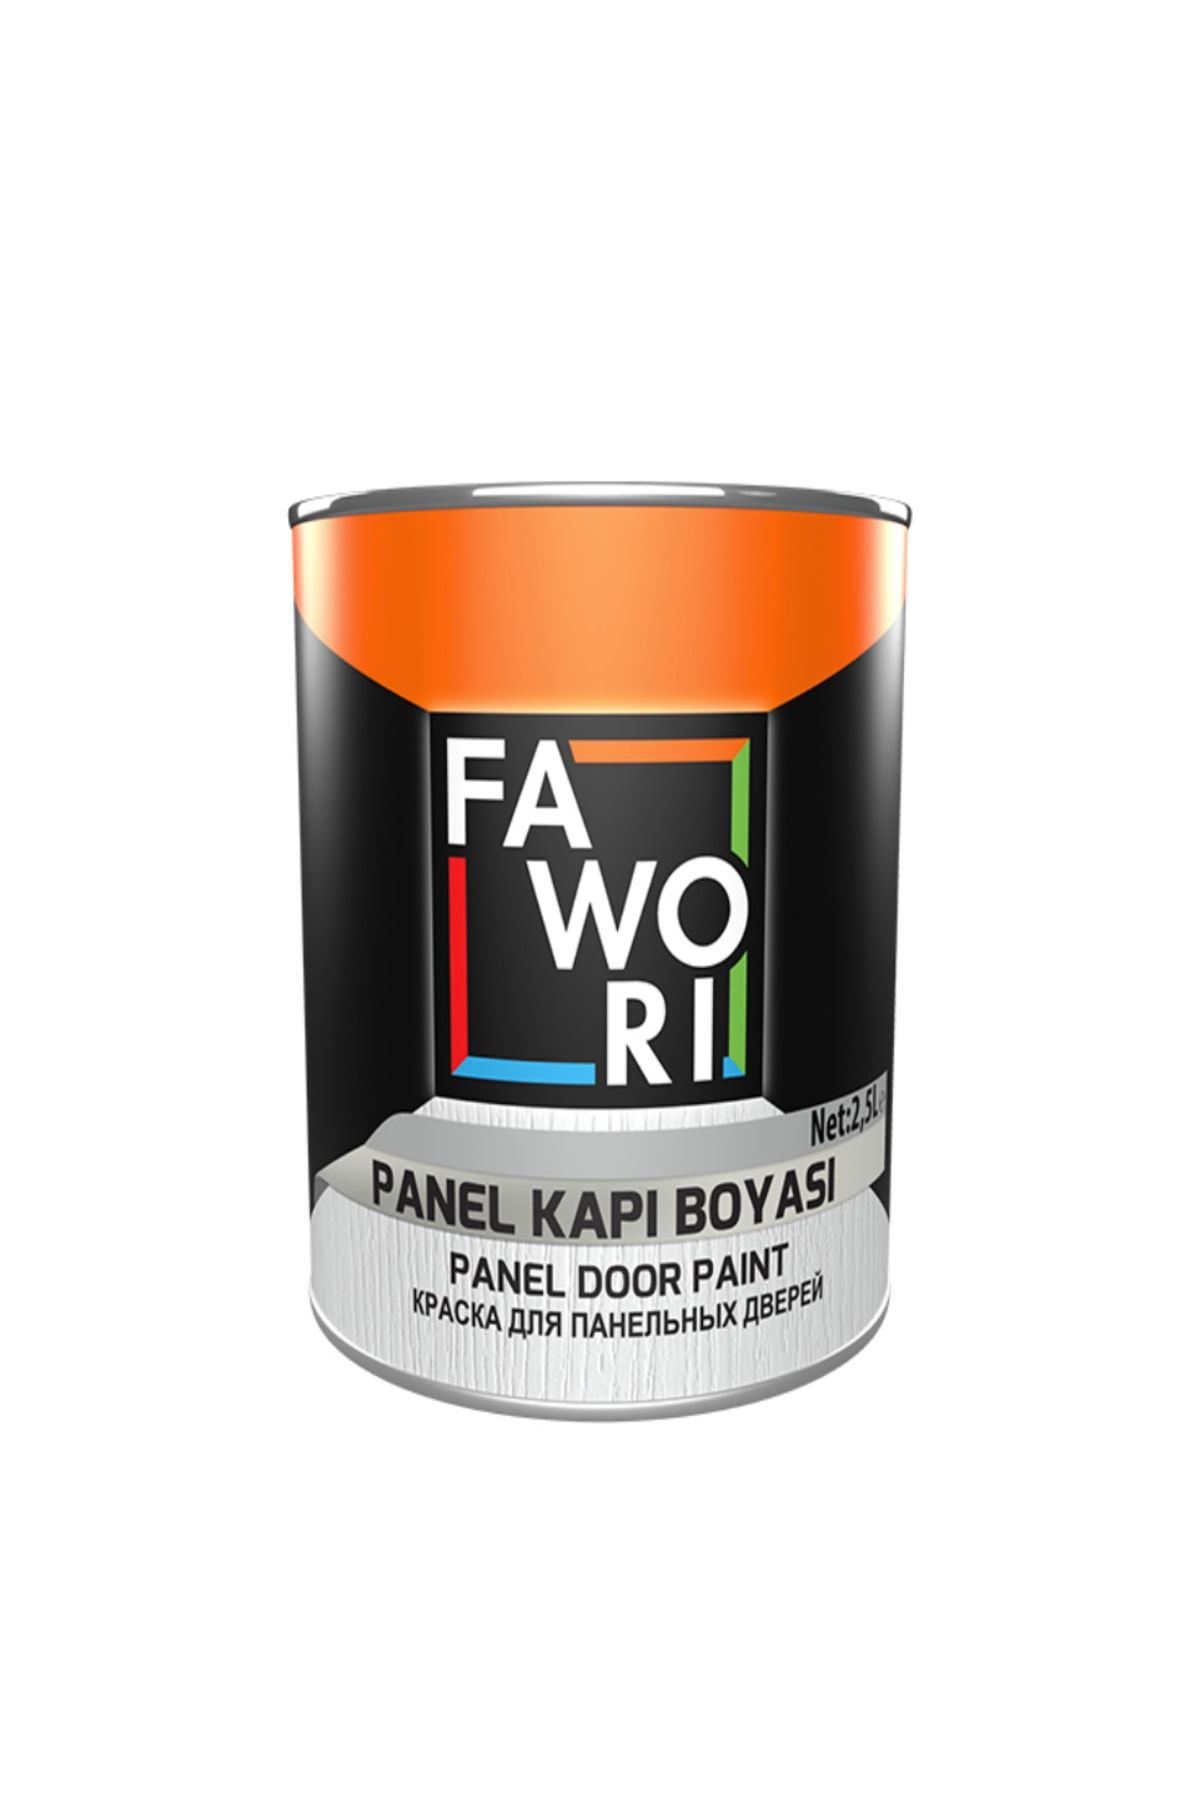 Fawori Su Bazlı Panel Kapı Boyası ( Akrilik Boya ) 2,5 Lt - Koyu Kahve